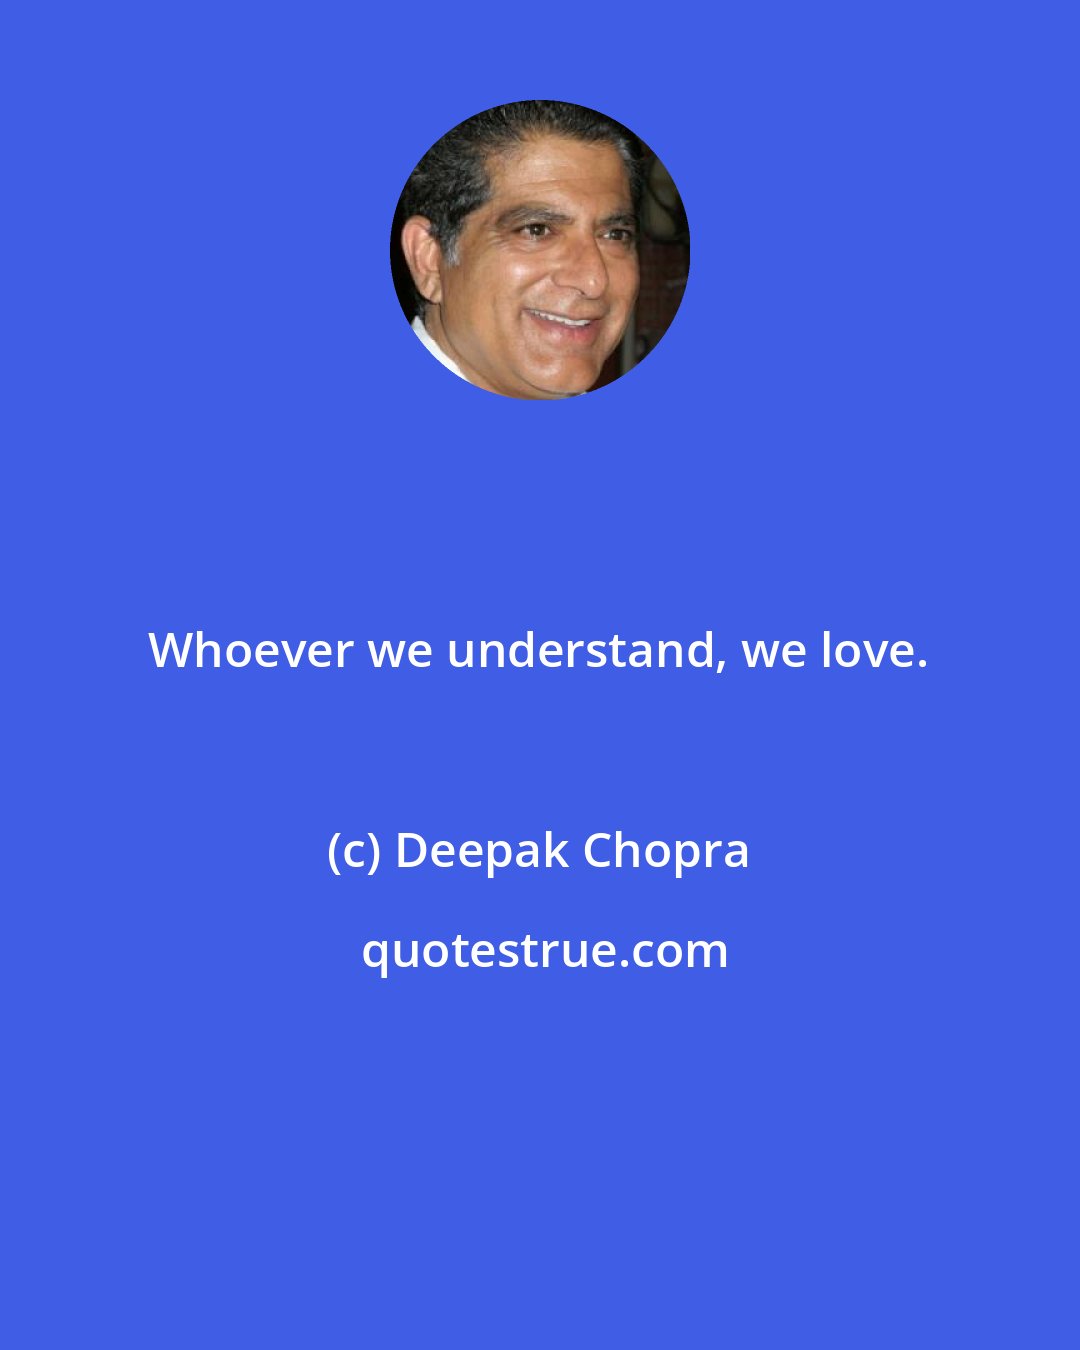 Deepak Chopra: Whoever we understand, we love.